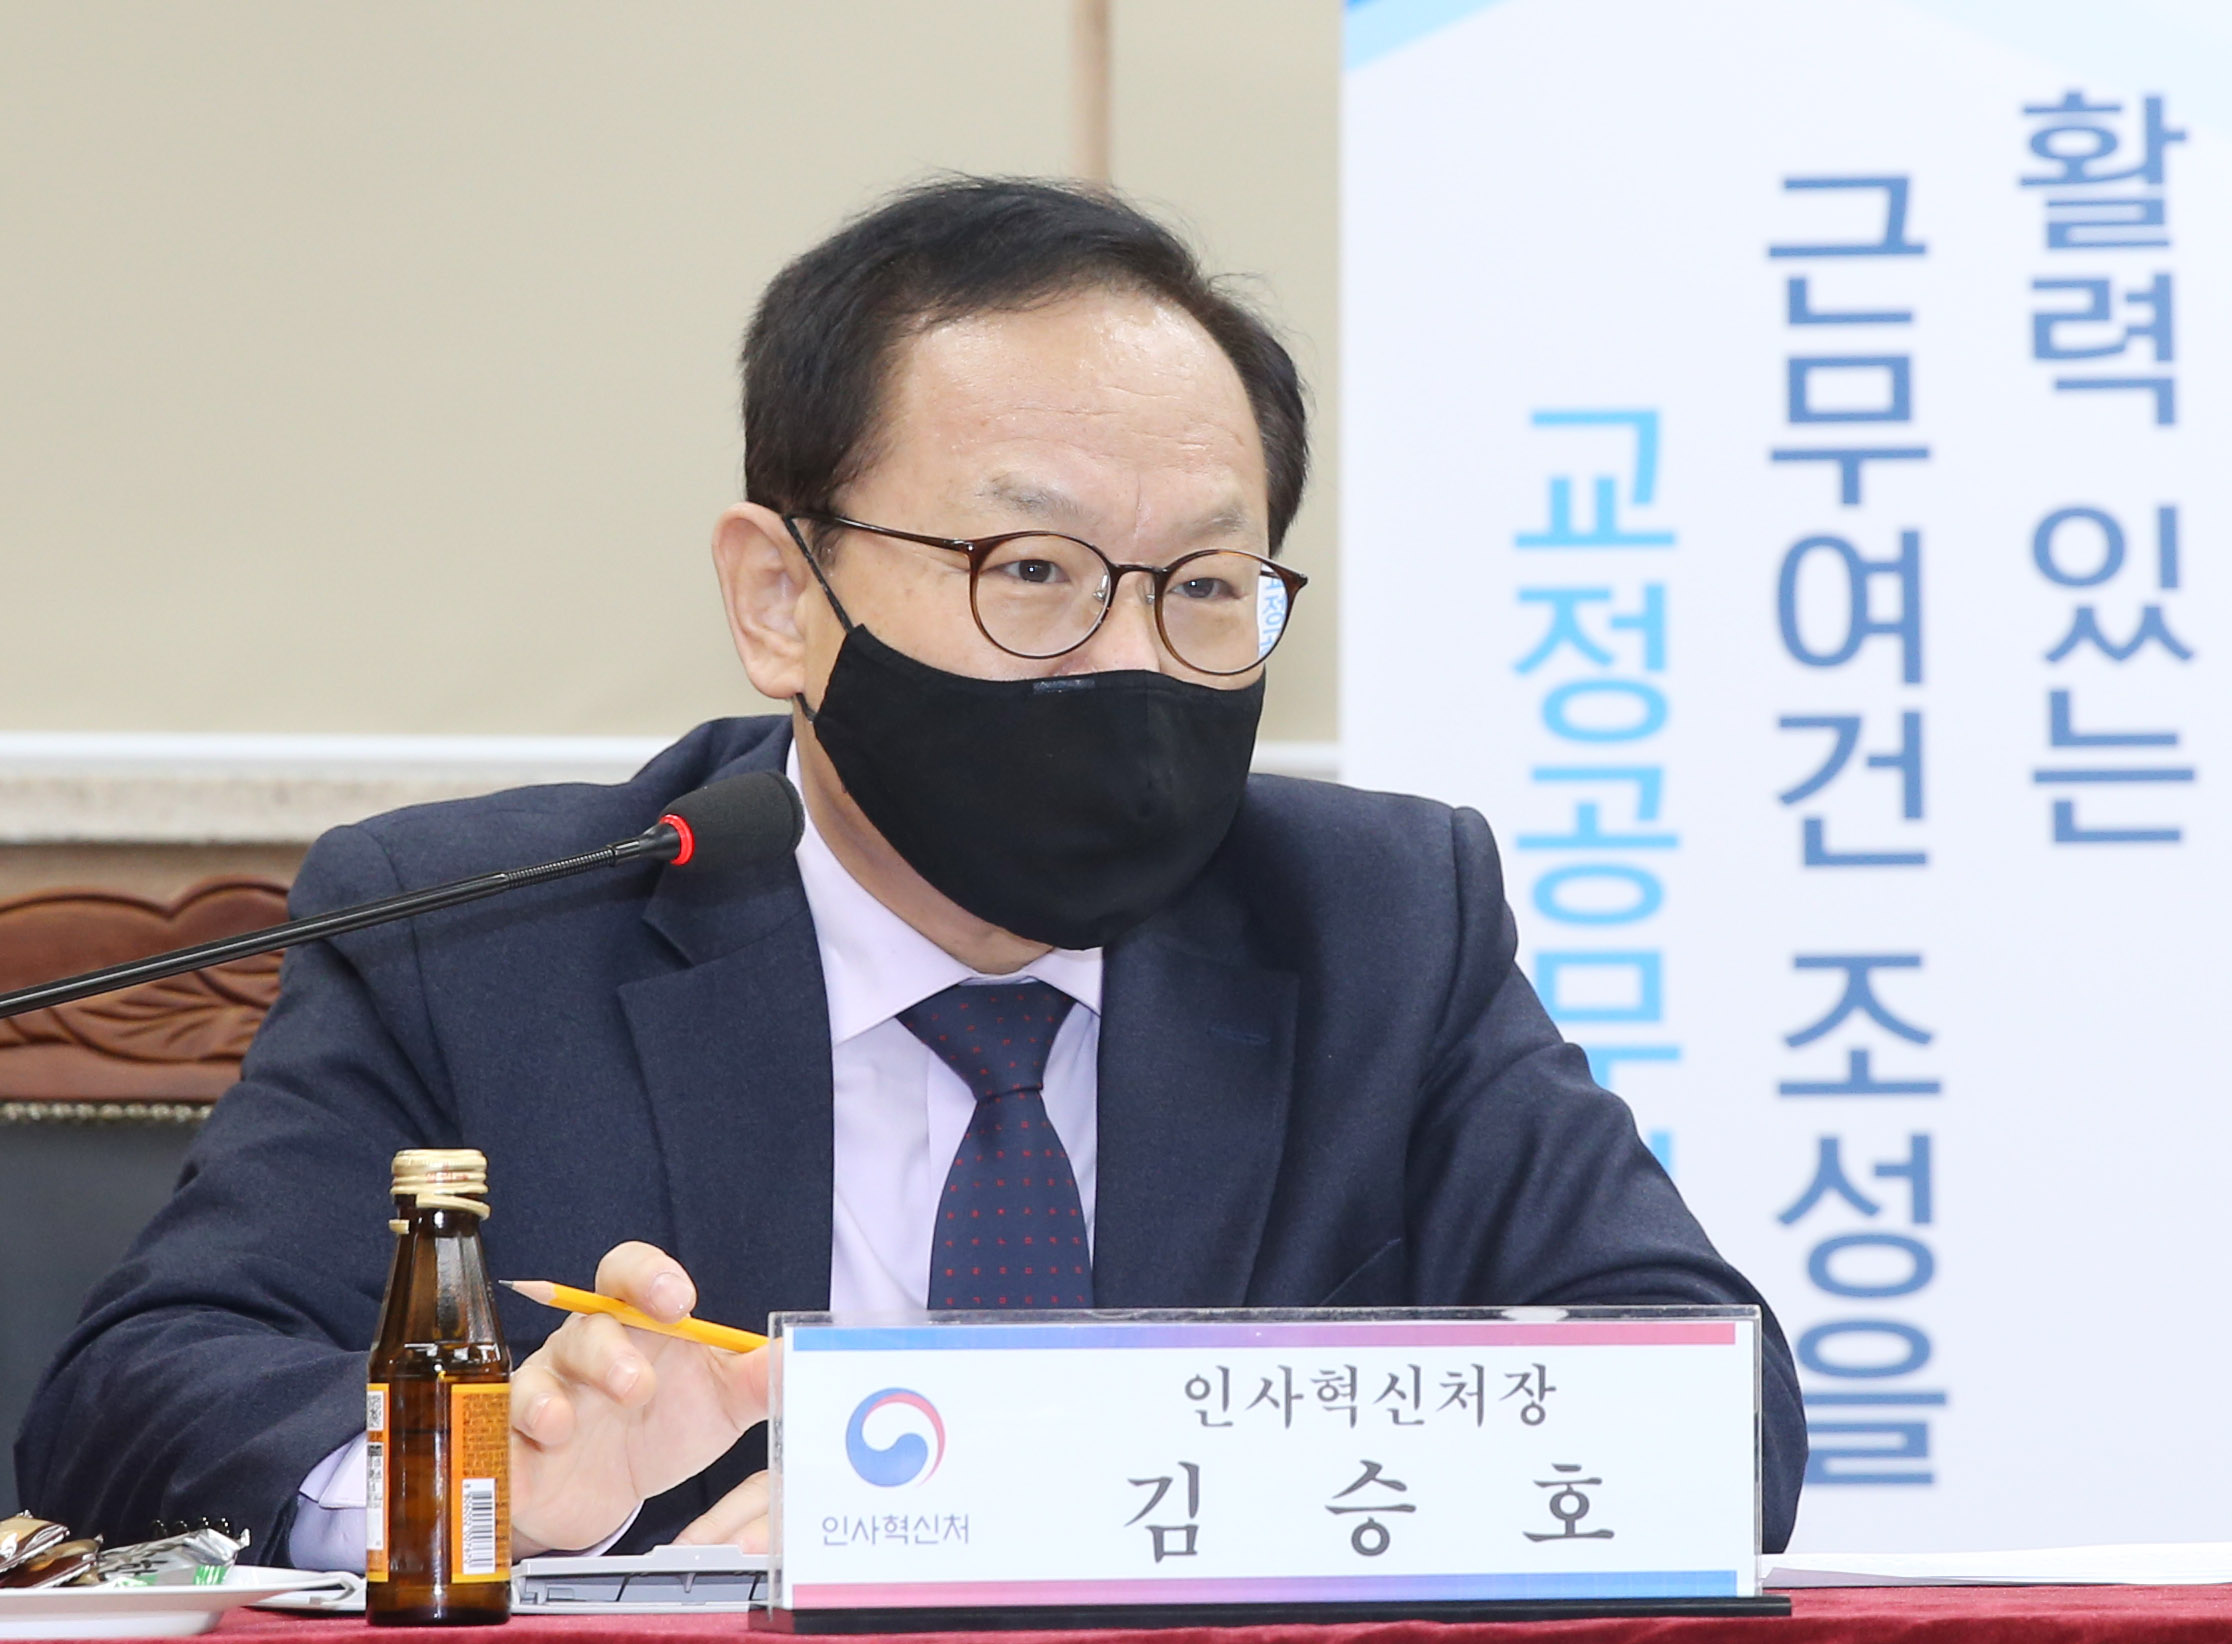 김승호 인사혁신처장이 10월 19일 대전교도소에서 열린 '활력있는 근무여건 조성을 위한 교정공무원 간담회'에 참석해 발언하는 모습